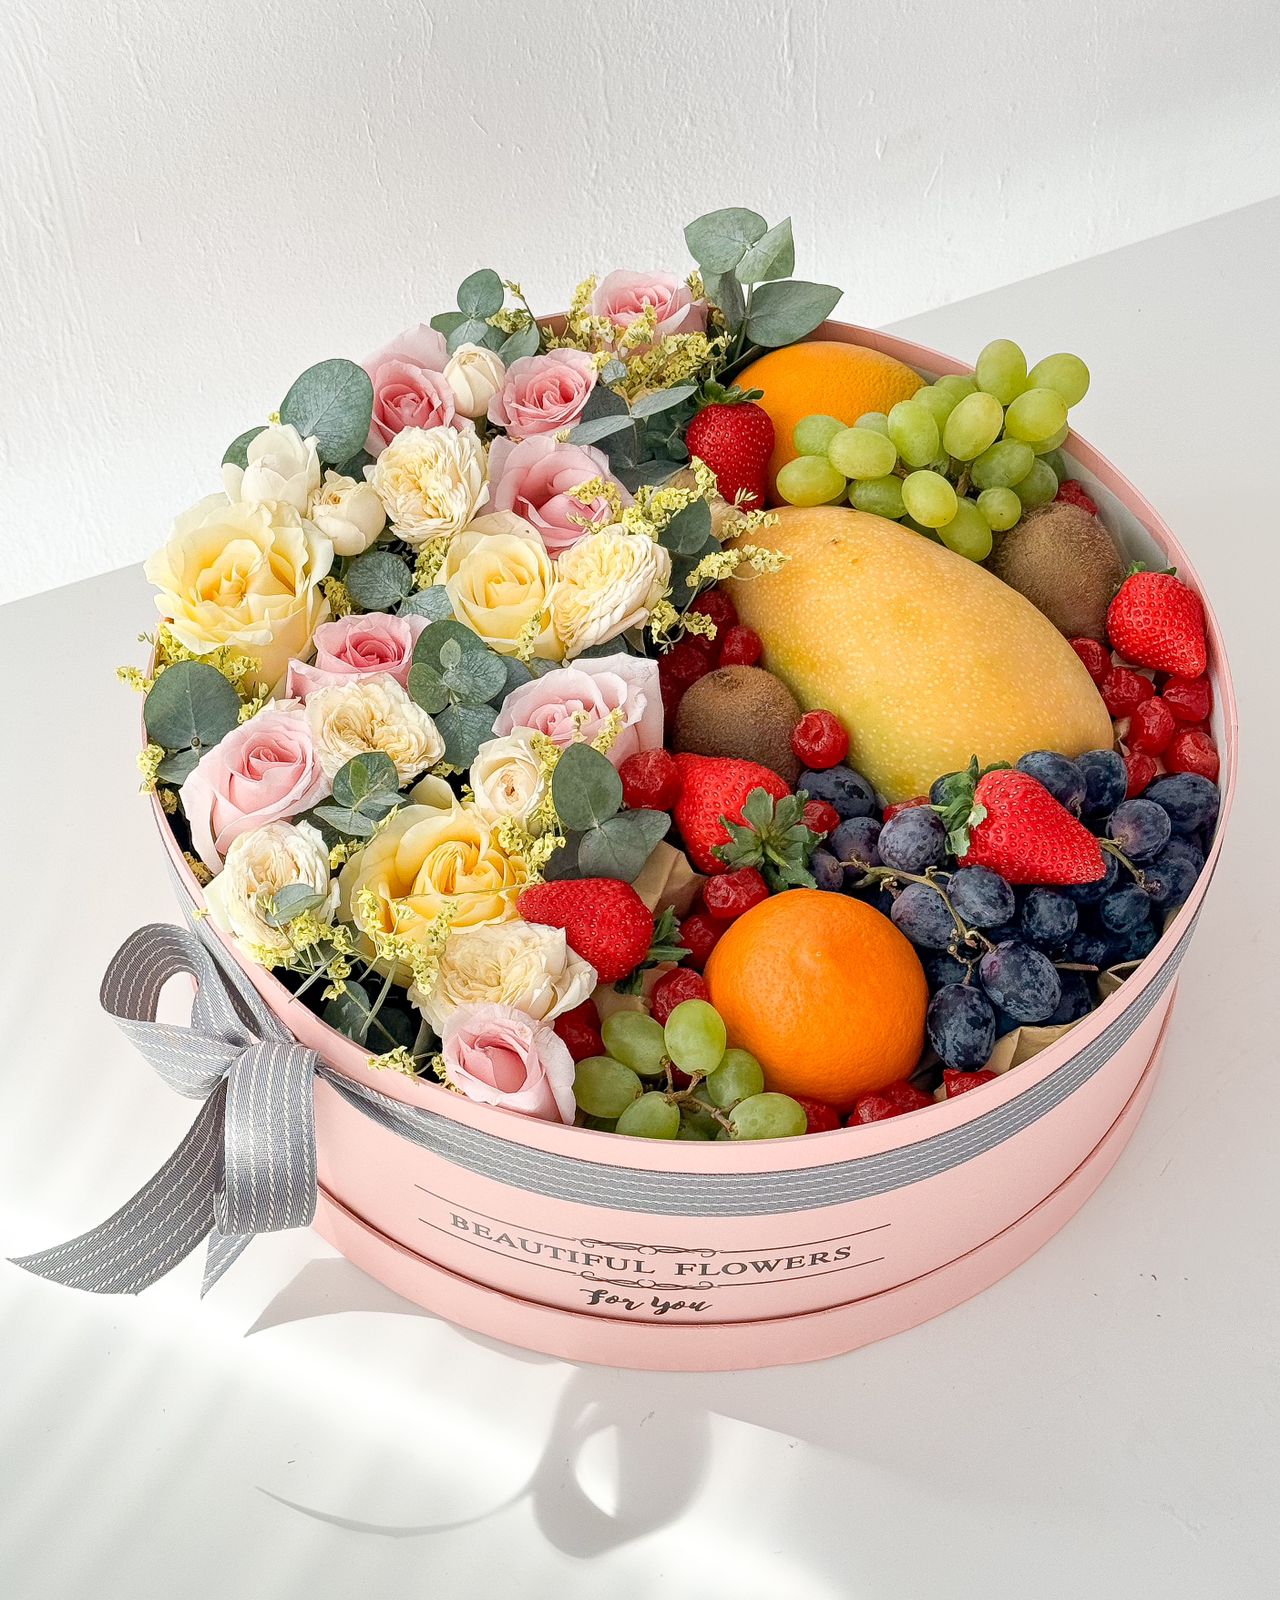 Фруктово-цветочная коробка "Careless Whisper" из роз и тропических фруктов